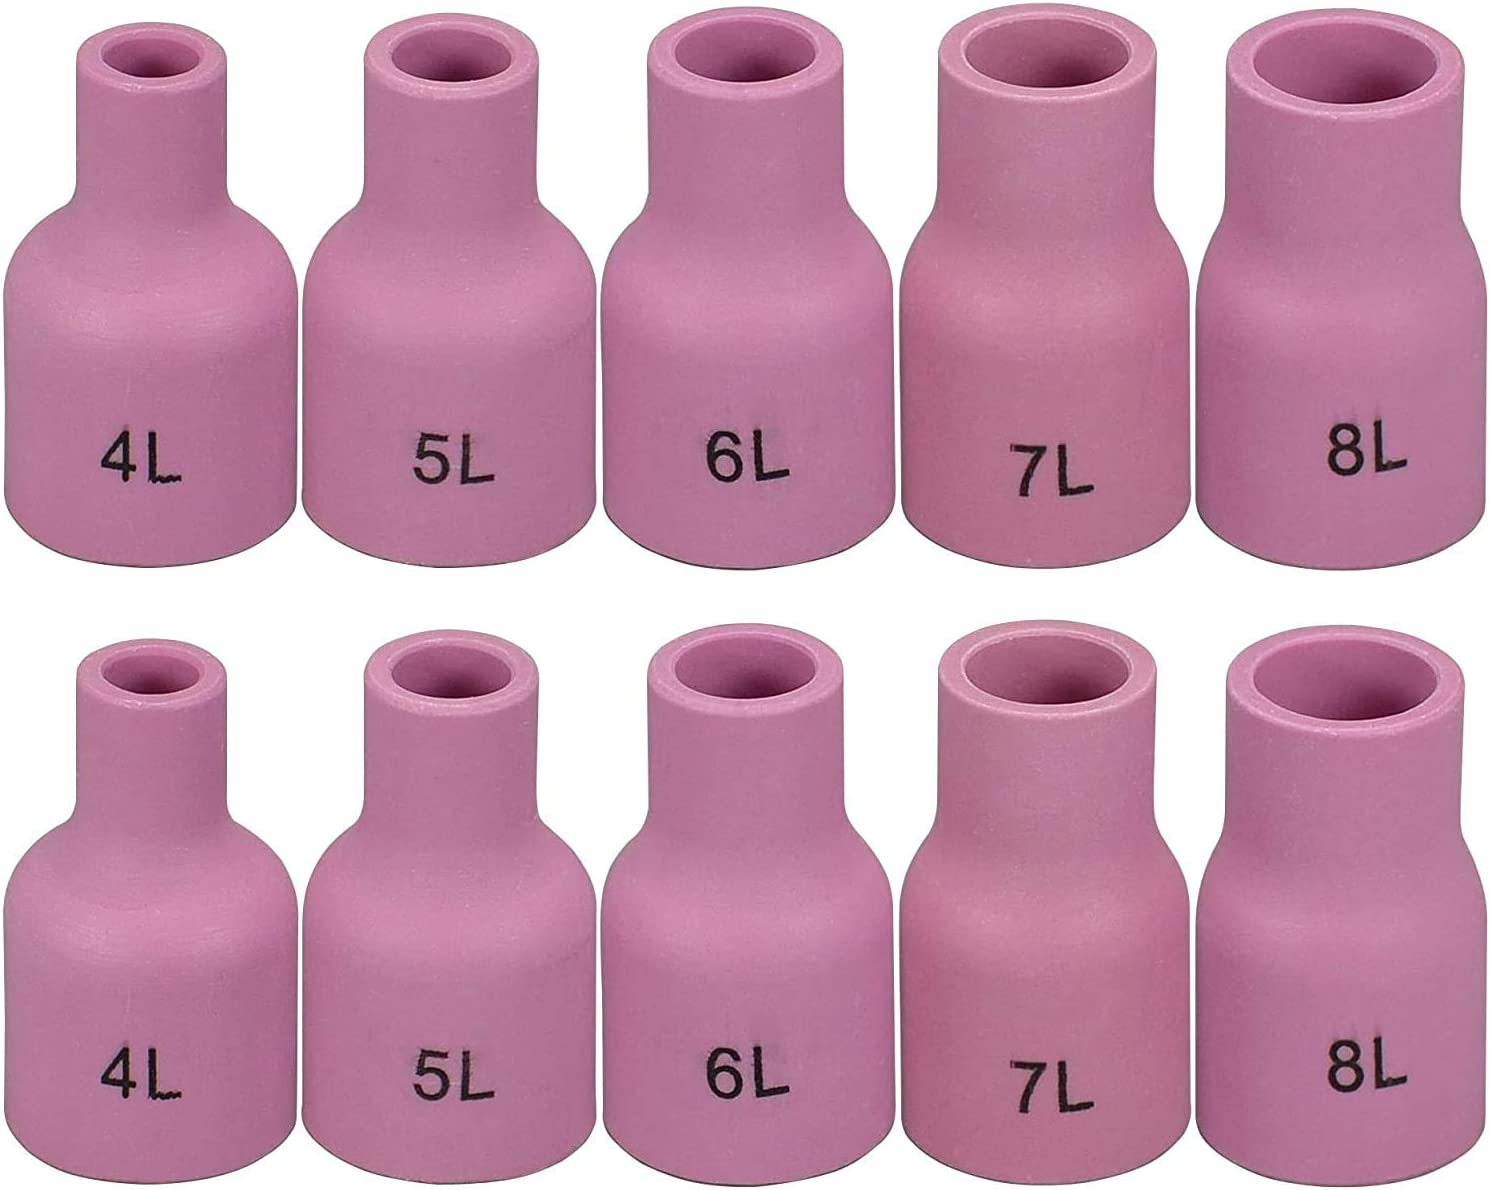 TIG Gas Lens Aluminia Nozzle Ceramic Cup Long Kit 53N58L (#4L 1/4") 53N59L (#5L 5/16") 53N60L (#6L 3/8") 53N61L (#7L 7/16") 53N61SL (#8L 1/2") for SR WP 9 20 25 TIG Welding Torch 10pcs 